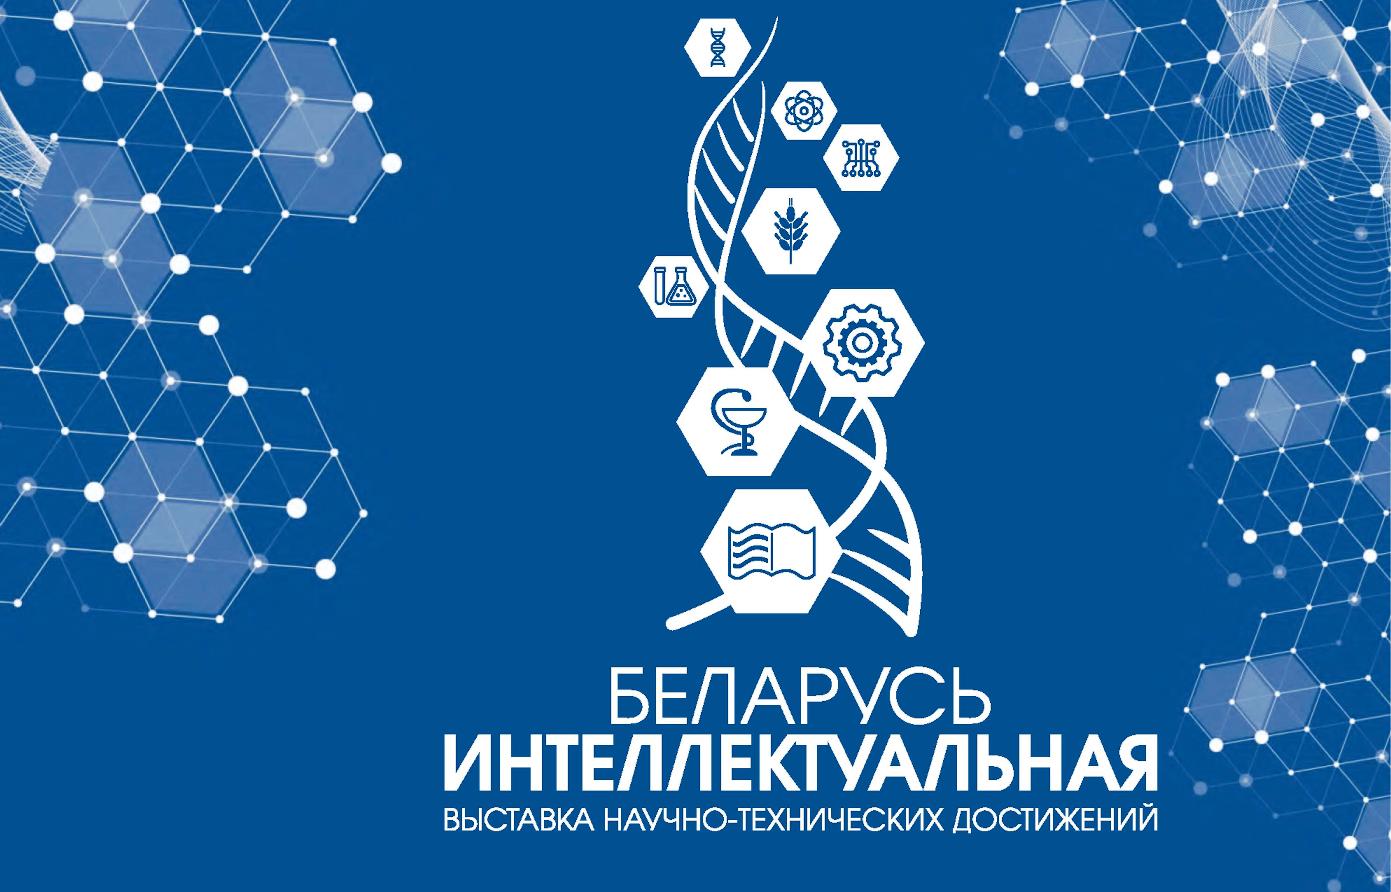 На выставке научно-технических достижений «Беларусь интеллектуальная»